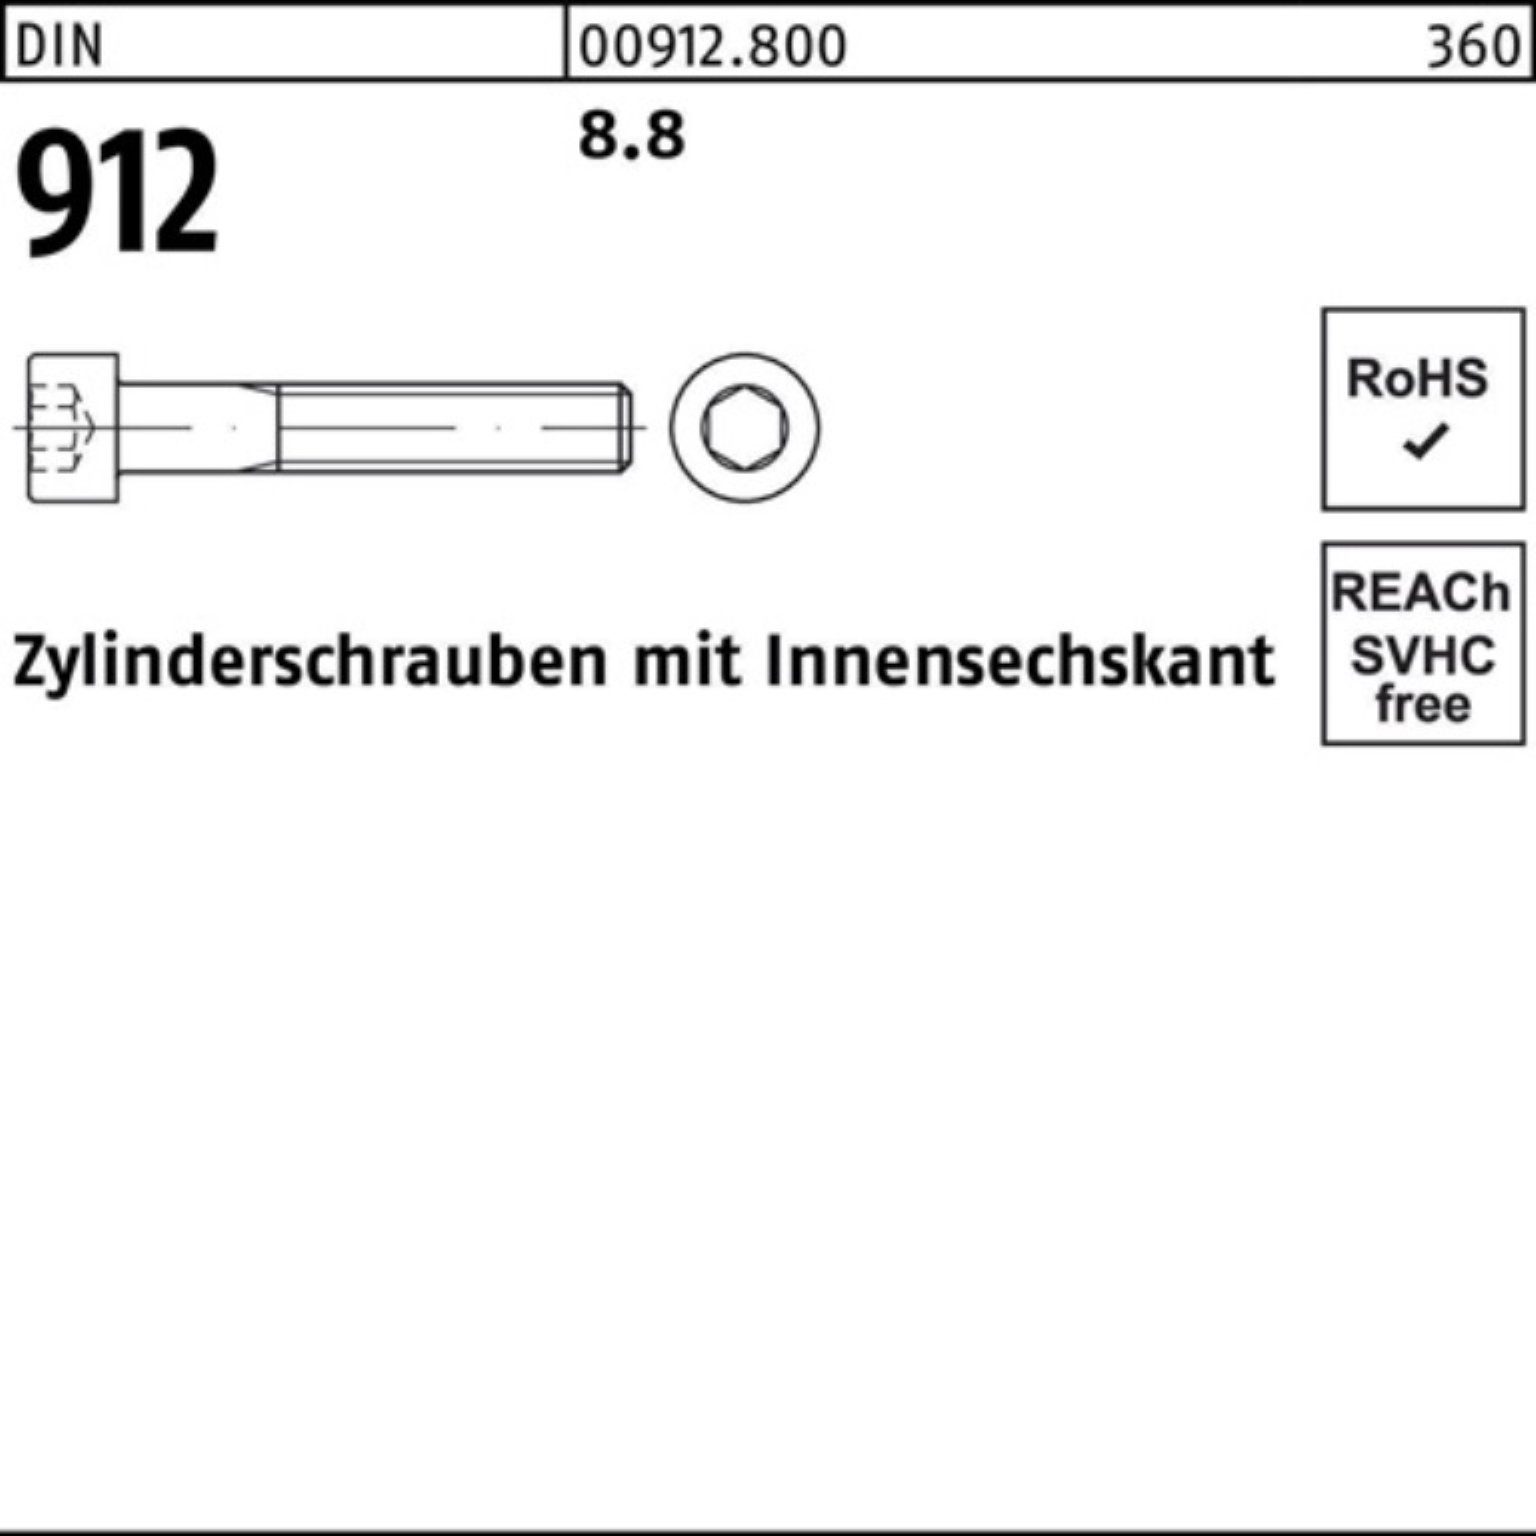 Innen-6kt 180 Reyher Pack DIN Zylinderschraube DI 912 Zylinderschraube 100er 1 8.8 Stück M33x